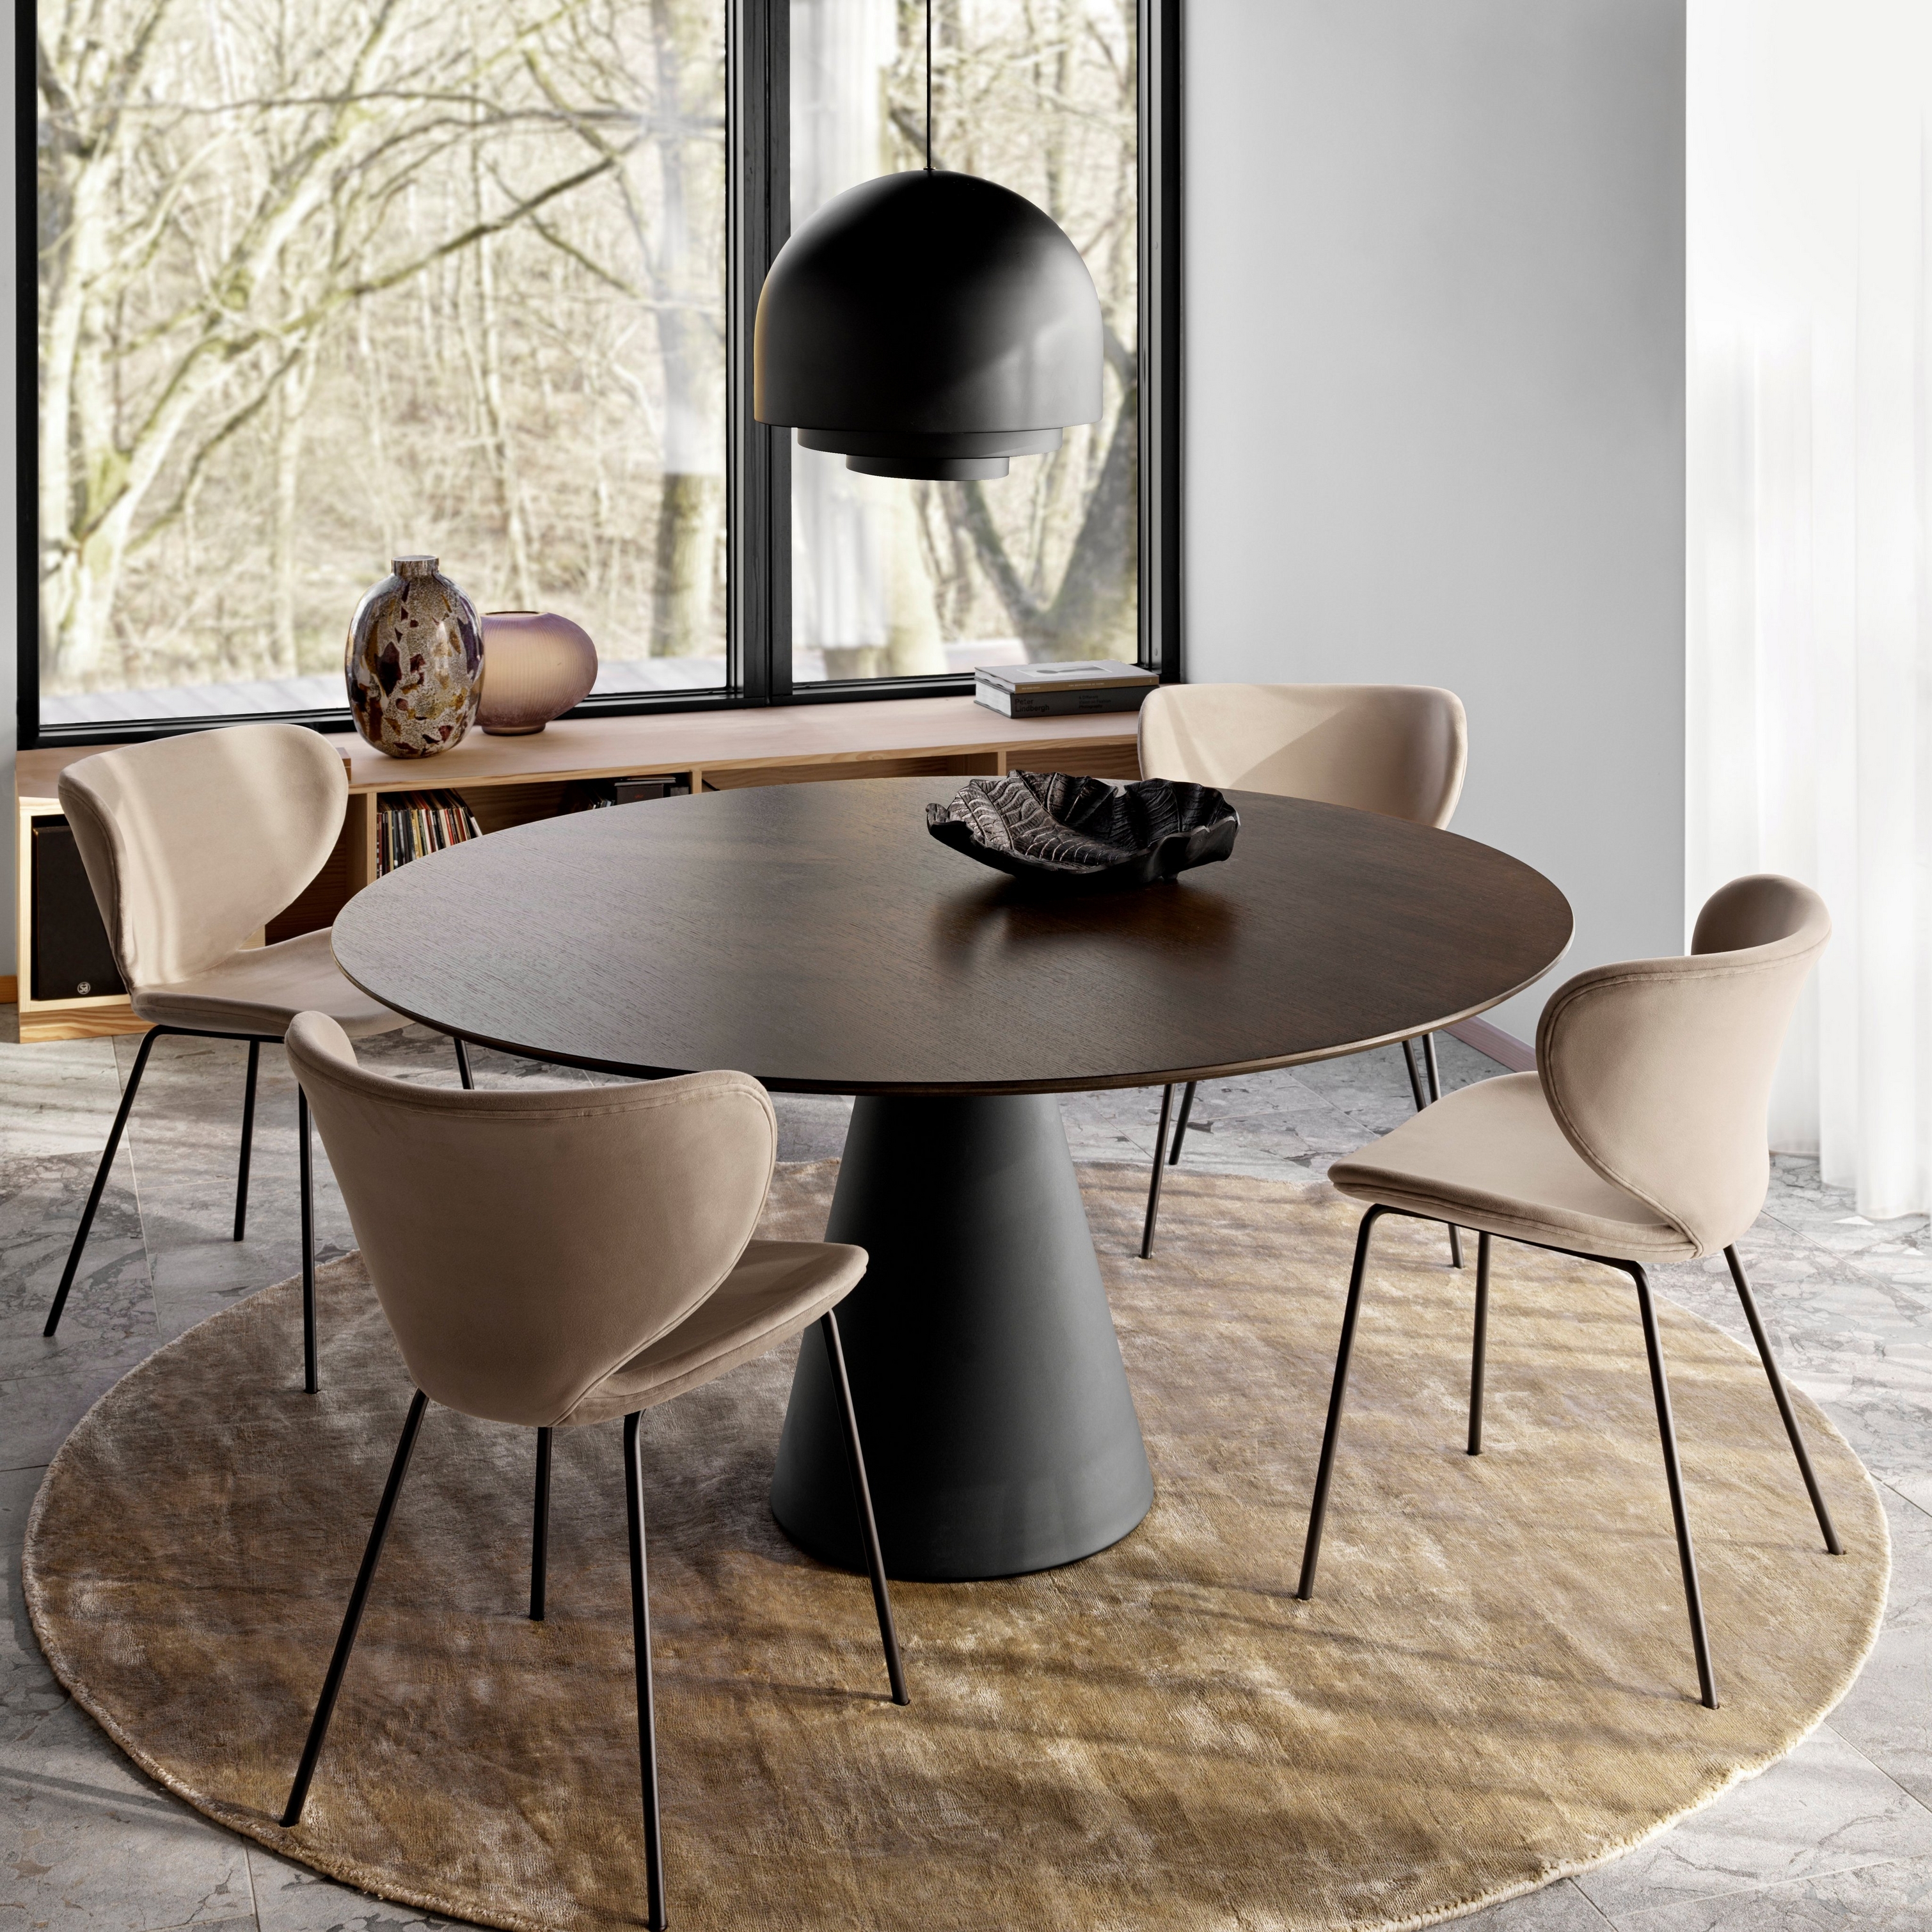 Runder Esstisch mit braunen Stühlen, großer Pendelleuchte auf einem runden Teppich in der Nähe von bodentiefen Fenstern.